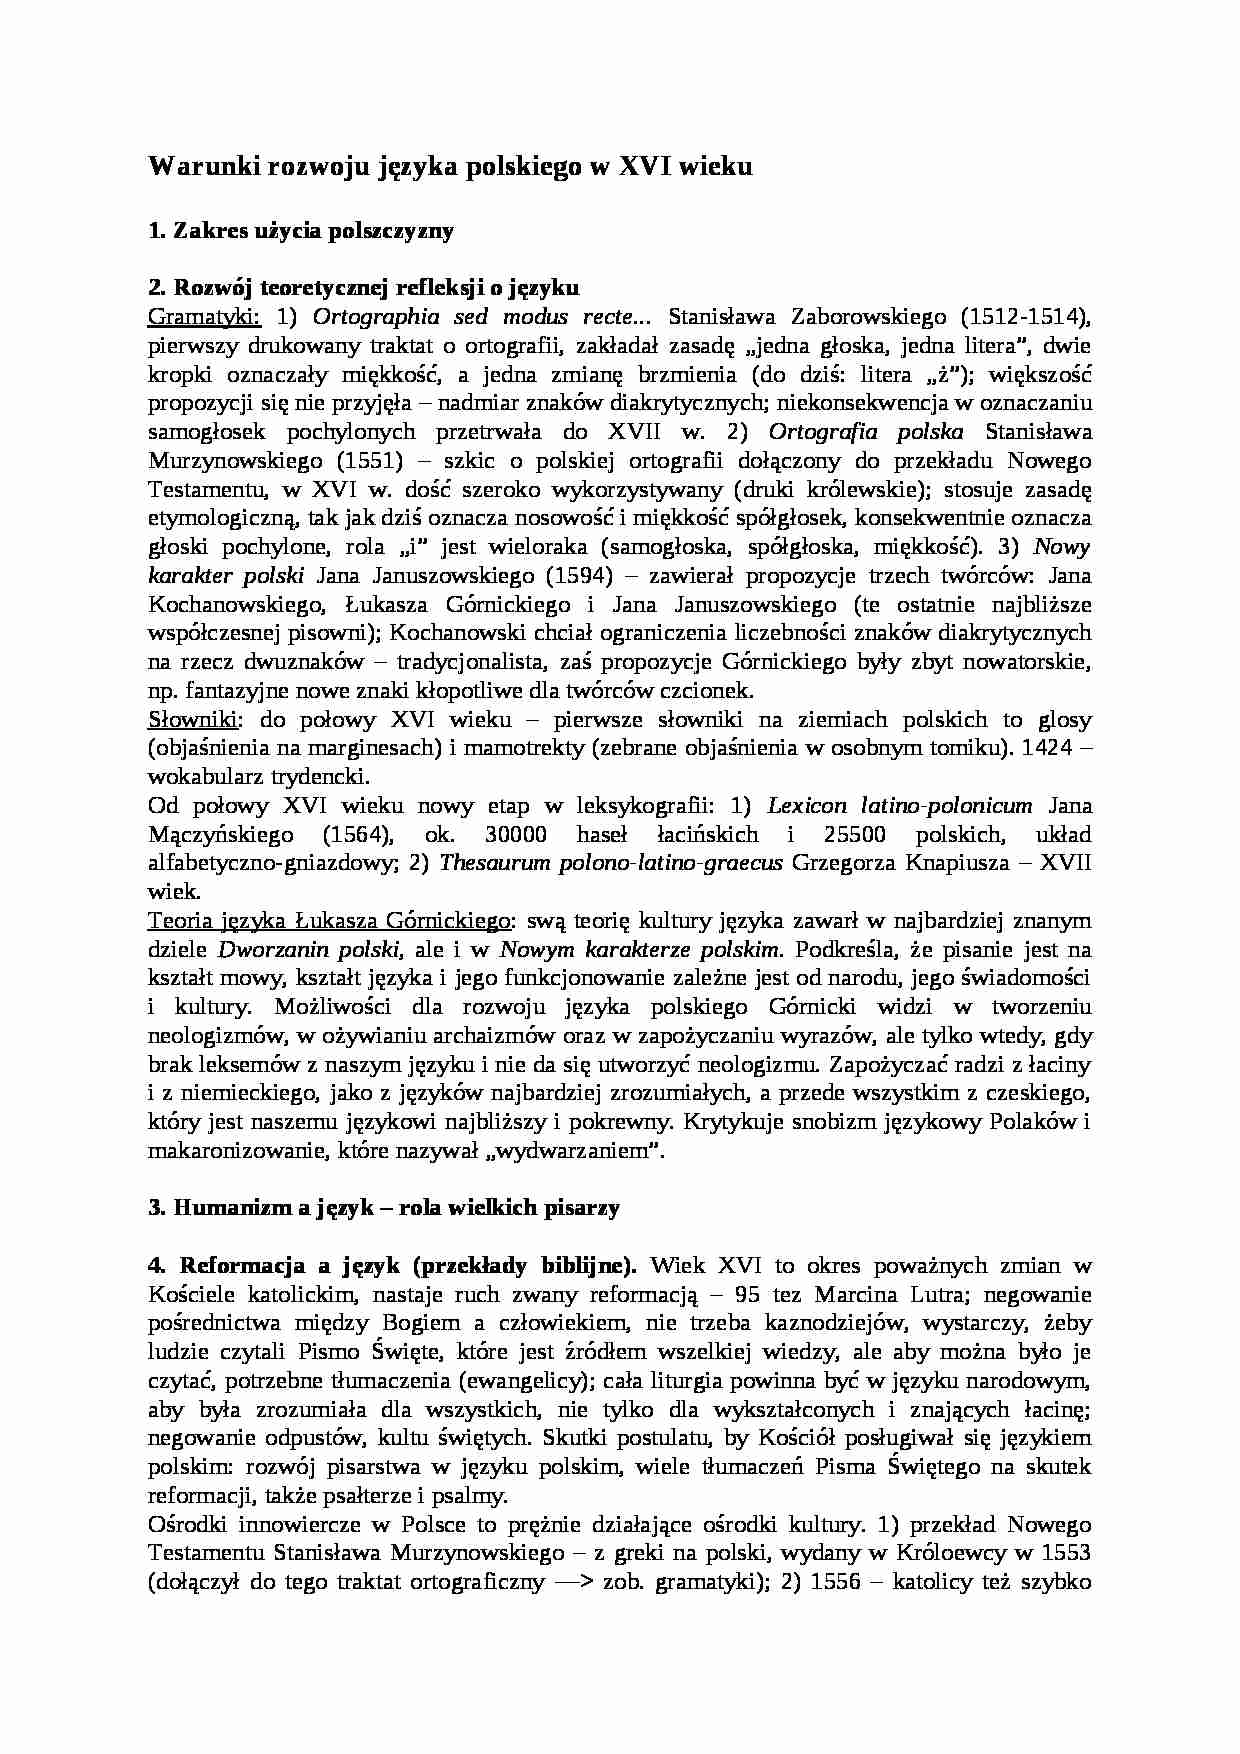 Warunki rozwoju języka polskiego w XVI wieku-opracowanie - strona 1